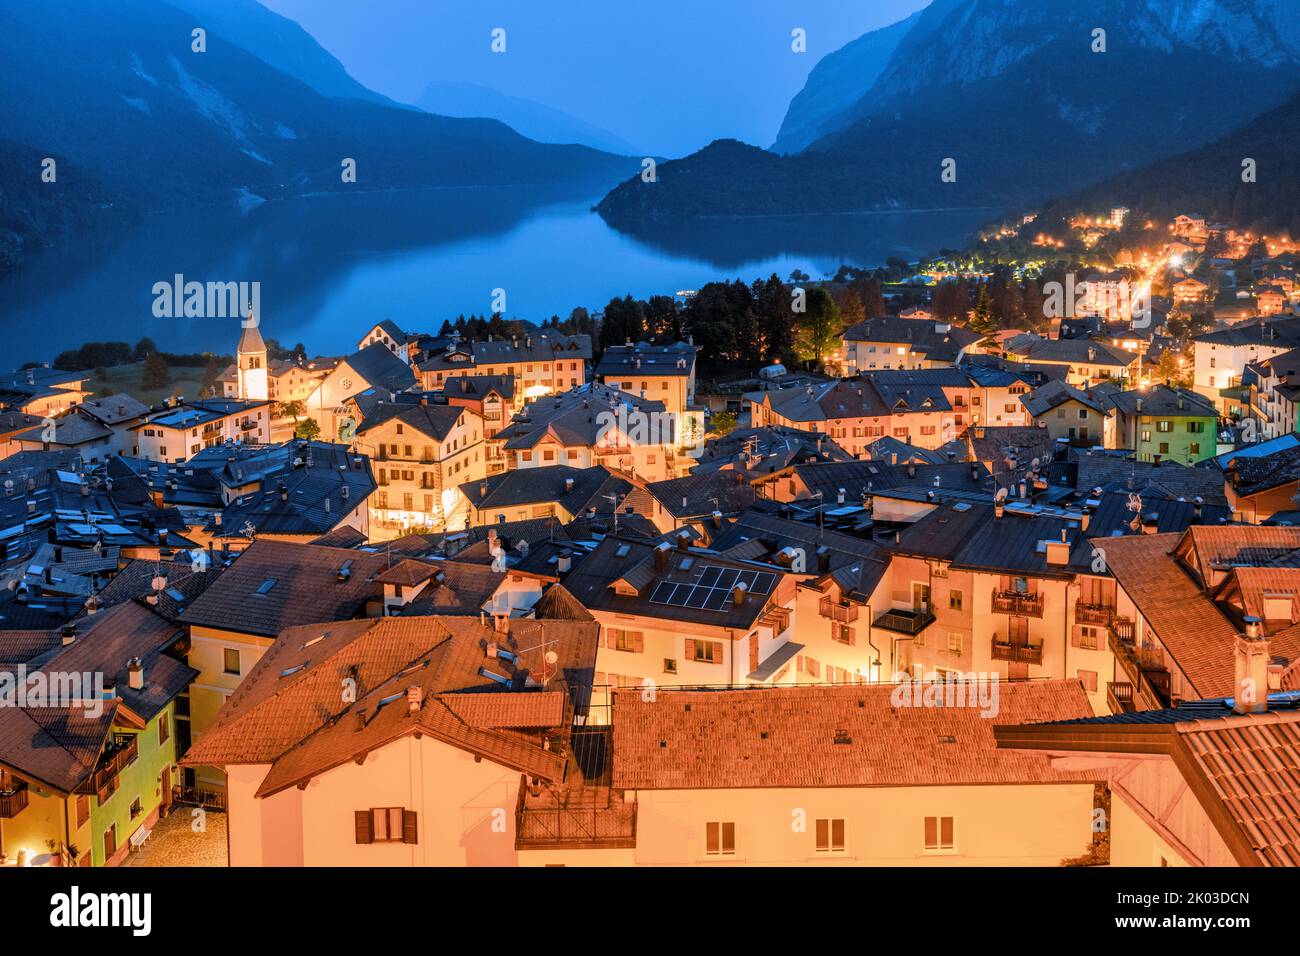 Italia, Trentino Alto Adige, provincia di Trento, Molveno. Vista sopraelevata di notte sul lago e sul paese di Molveno Foto Stock